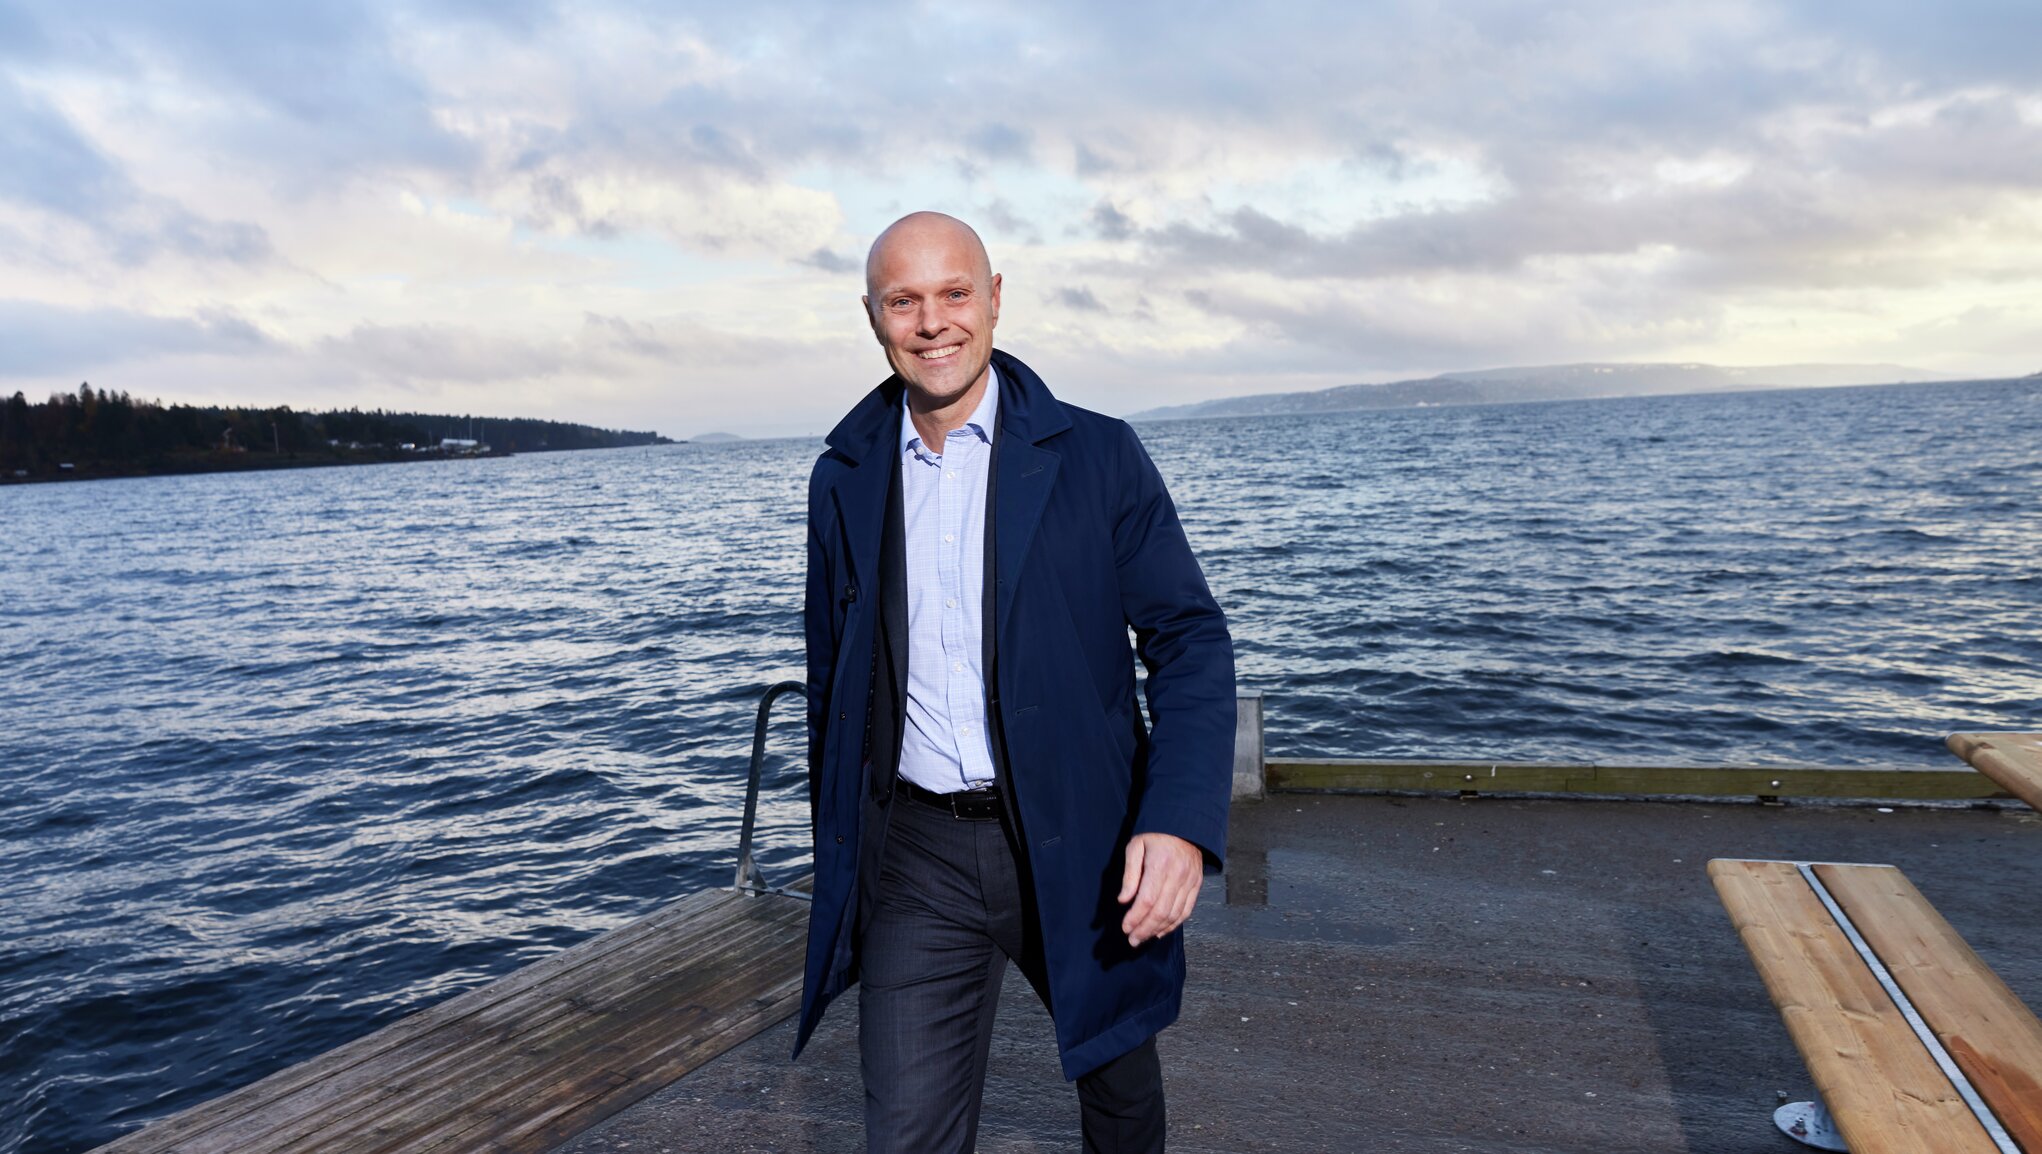 Ifin toimitusjohtaja Morten Thorsrud kävelee laiturilla